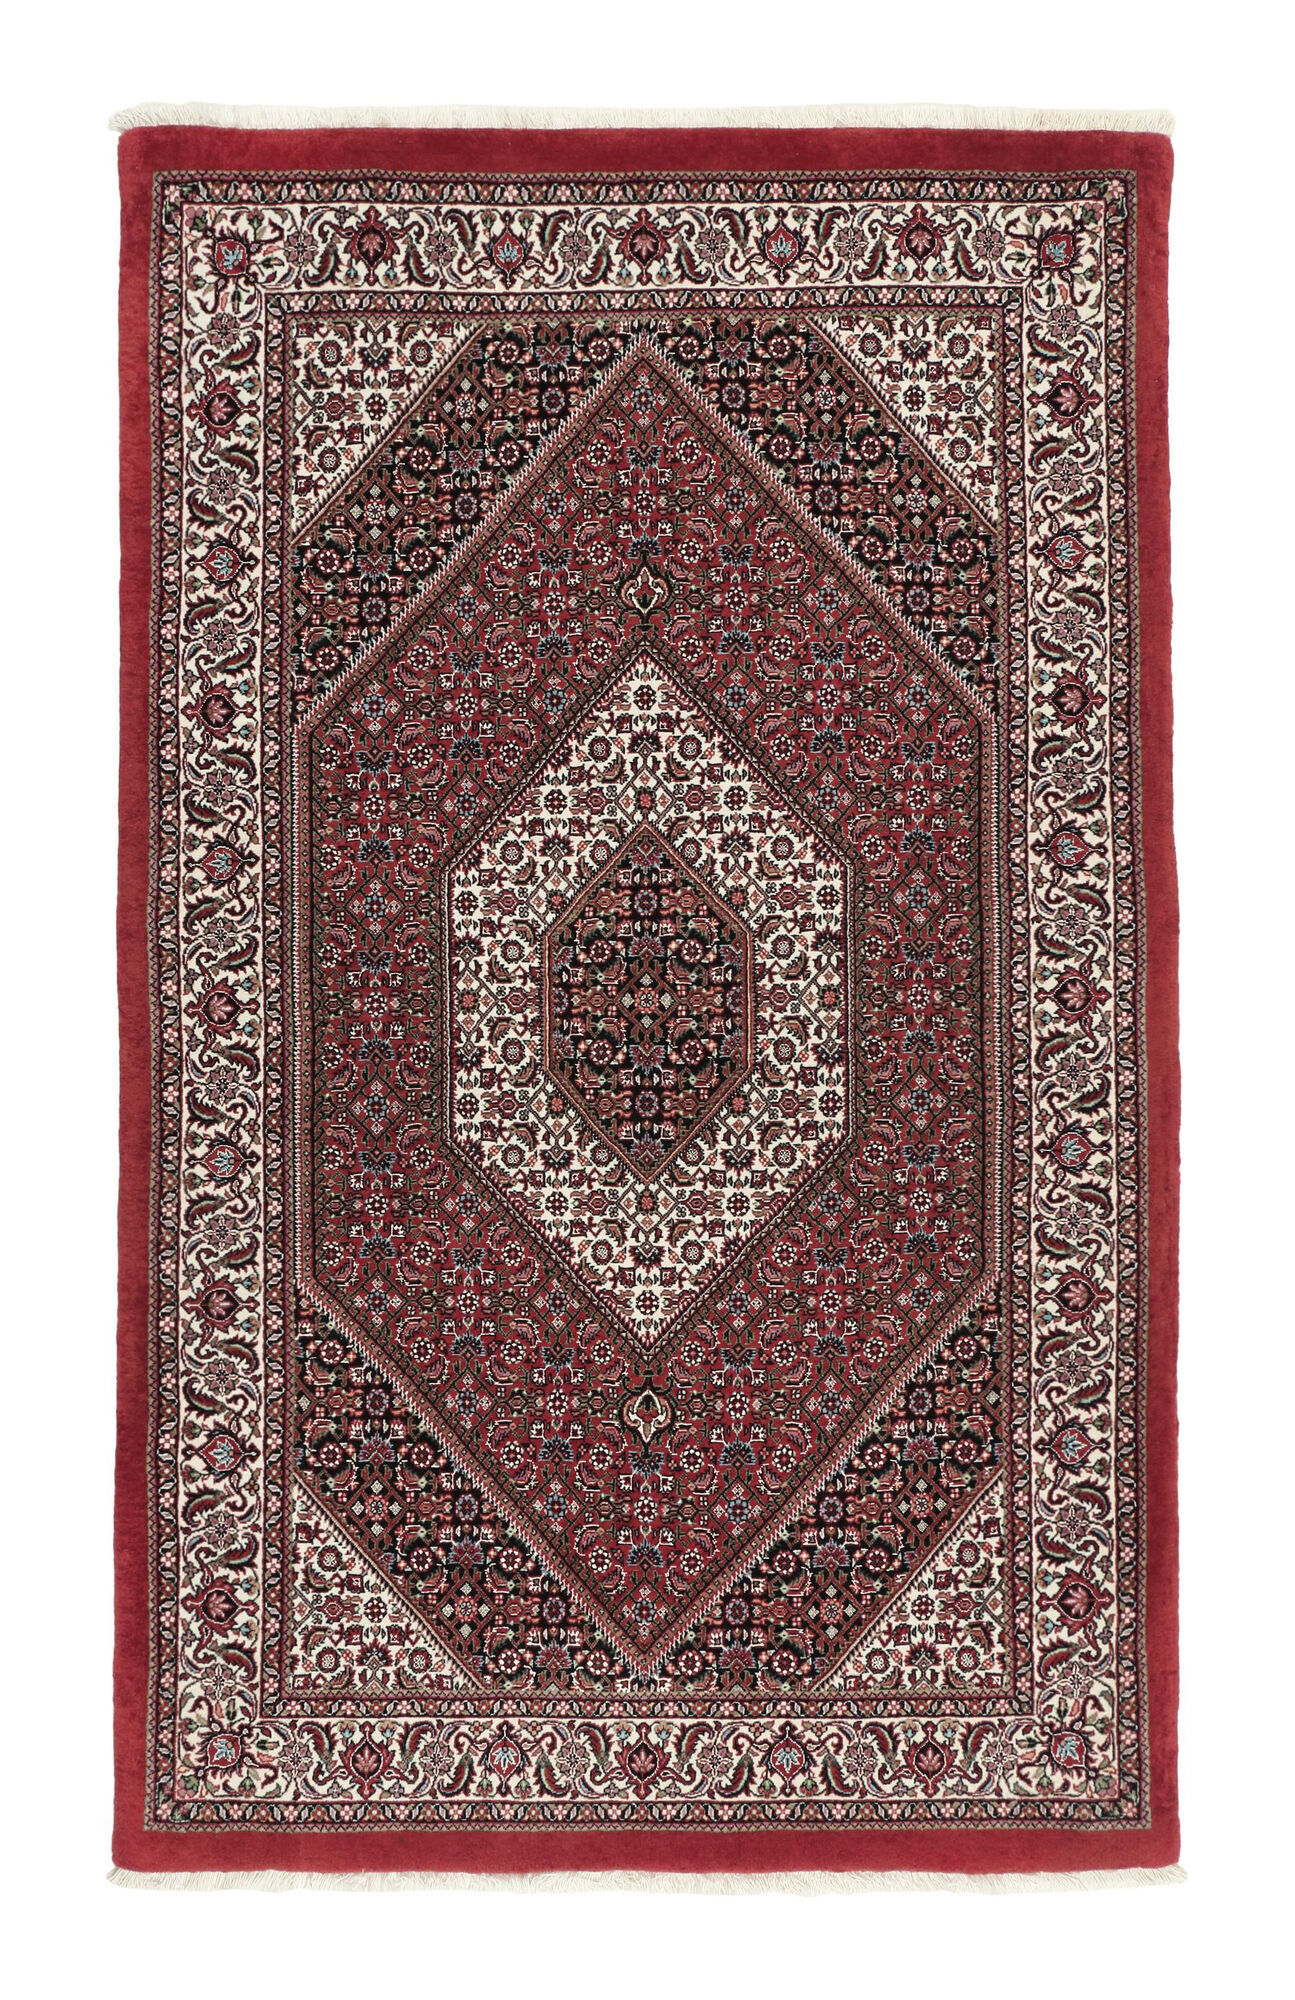 Annodato a mano. Provenienza: Persia / Iran Bidjar con di seta Tappeto 110x185